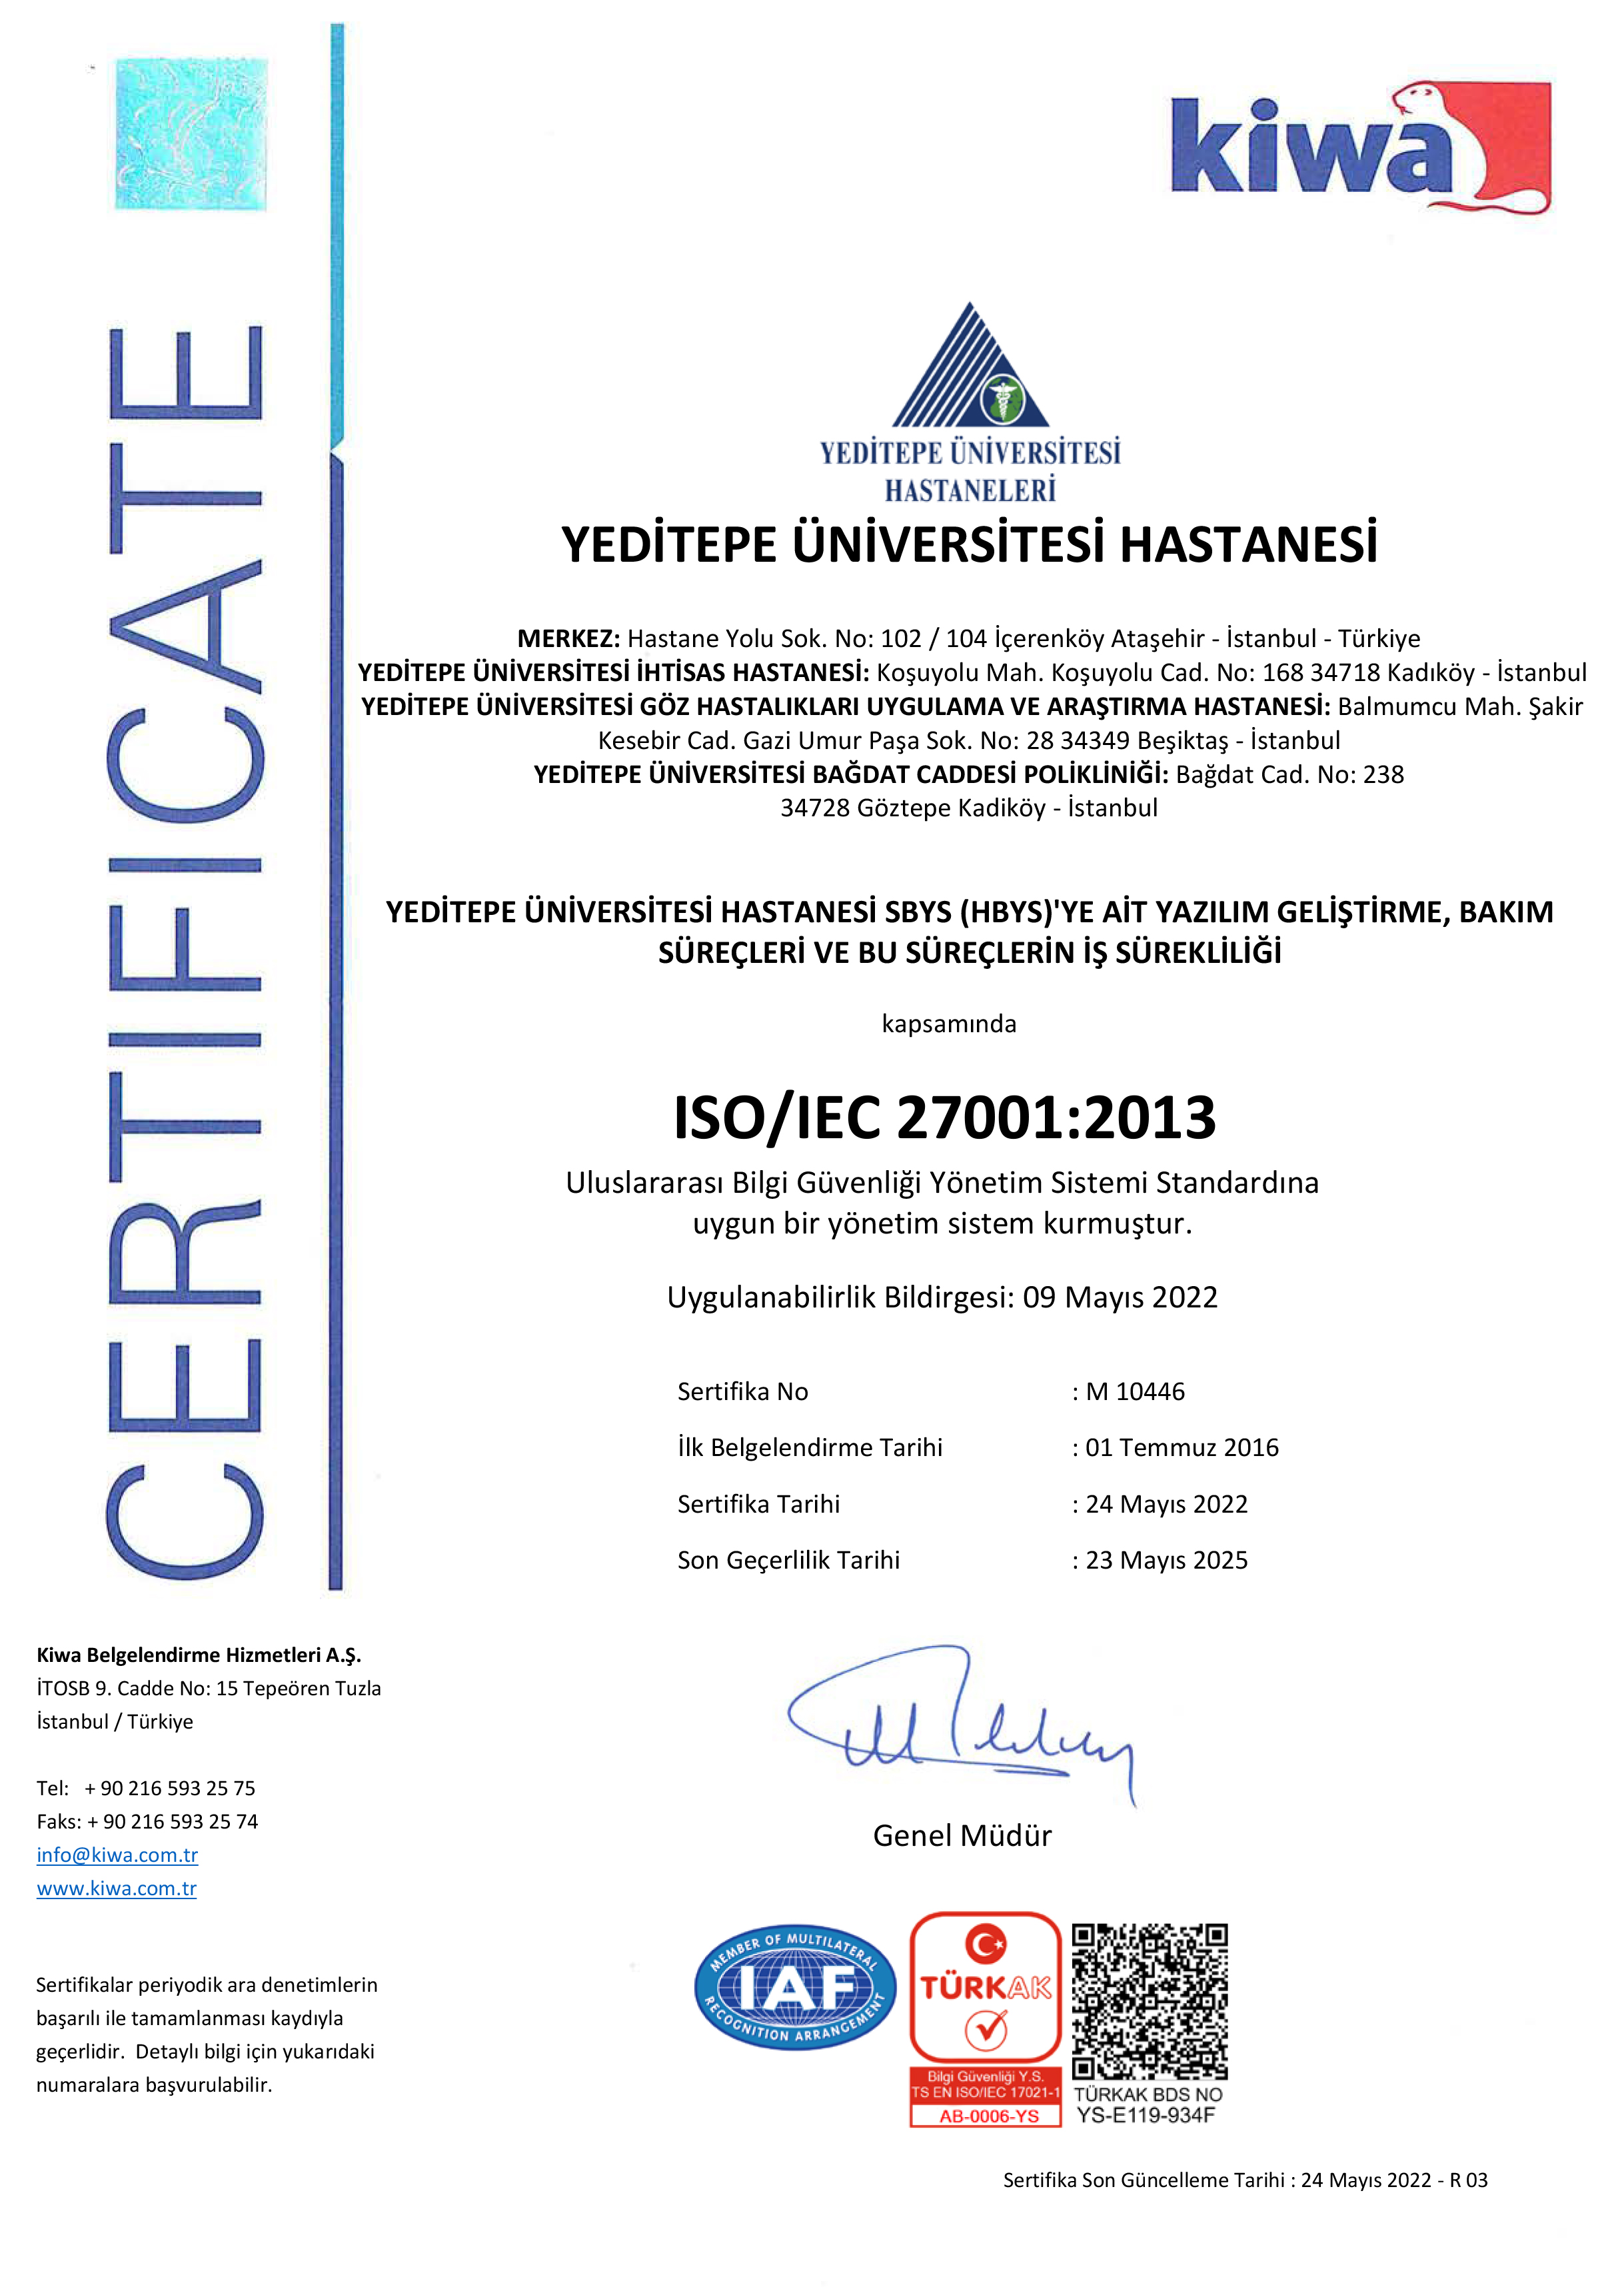 Kiwa TR ISO IEC 27001 2013 Sertifika (1).jpeg 